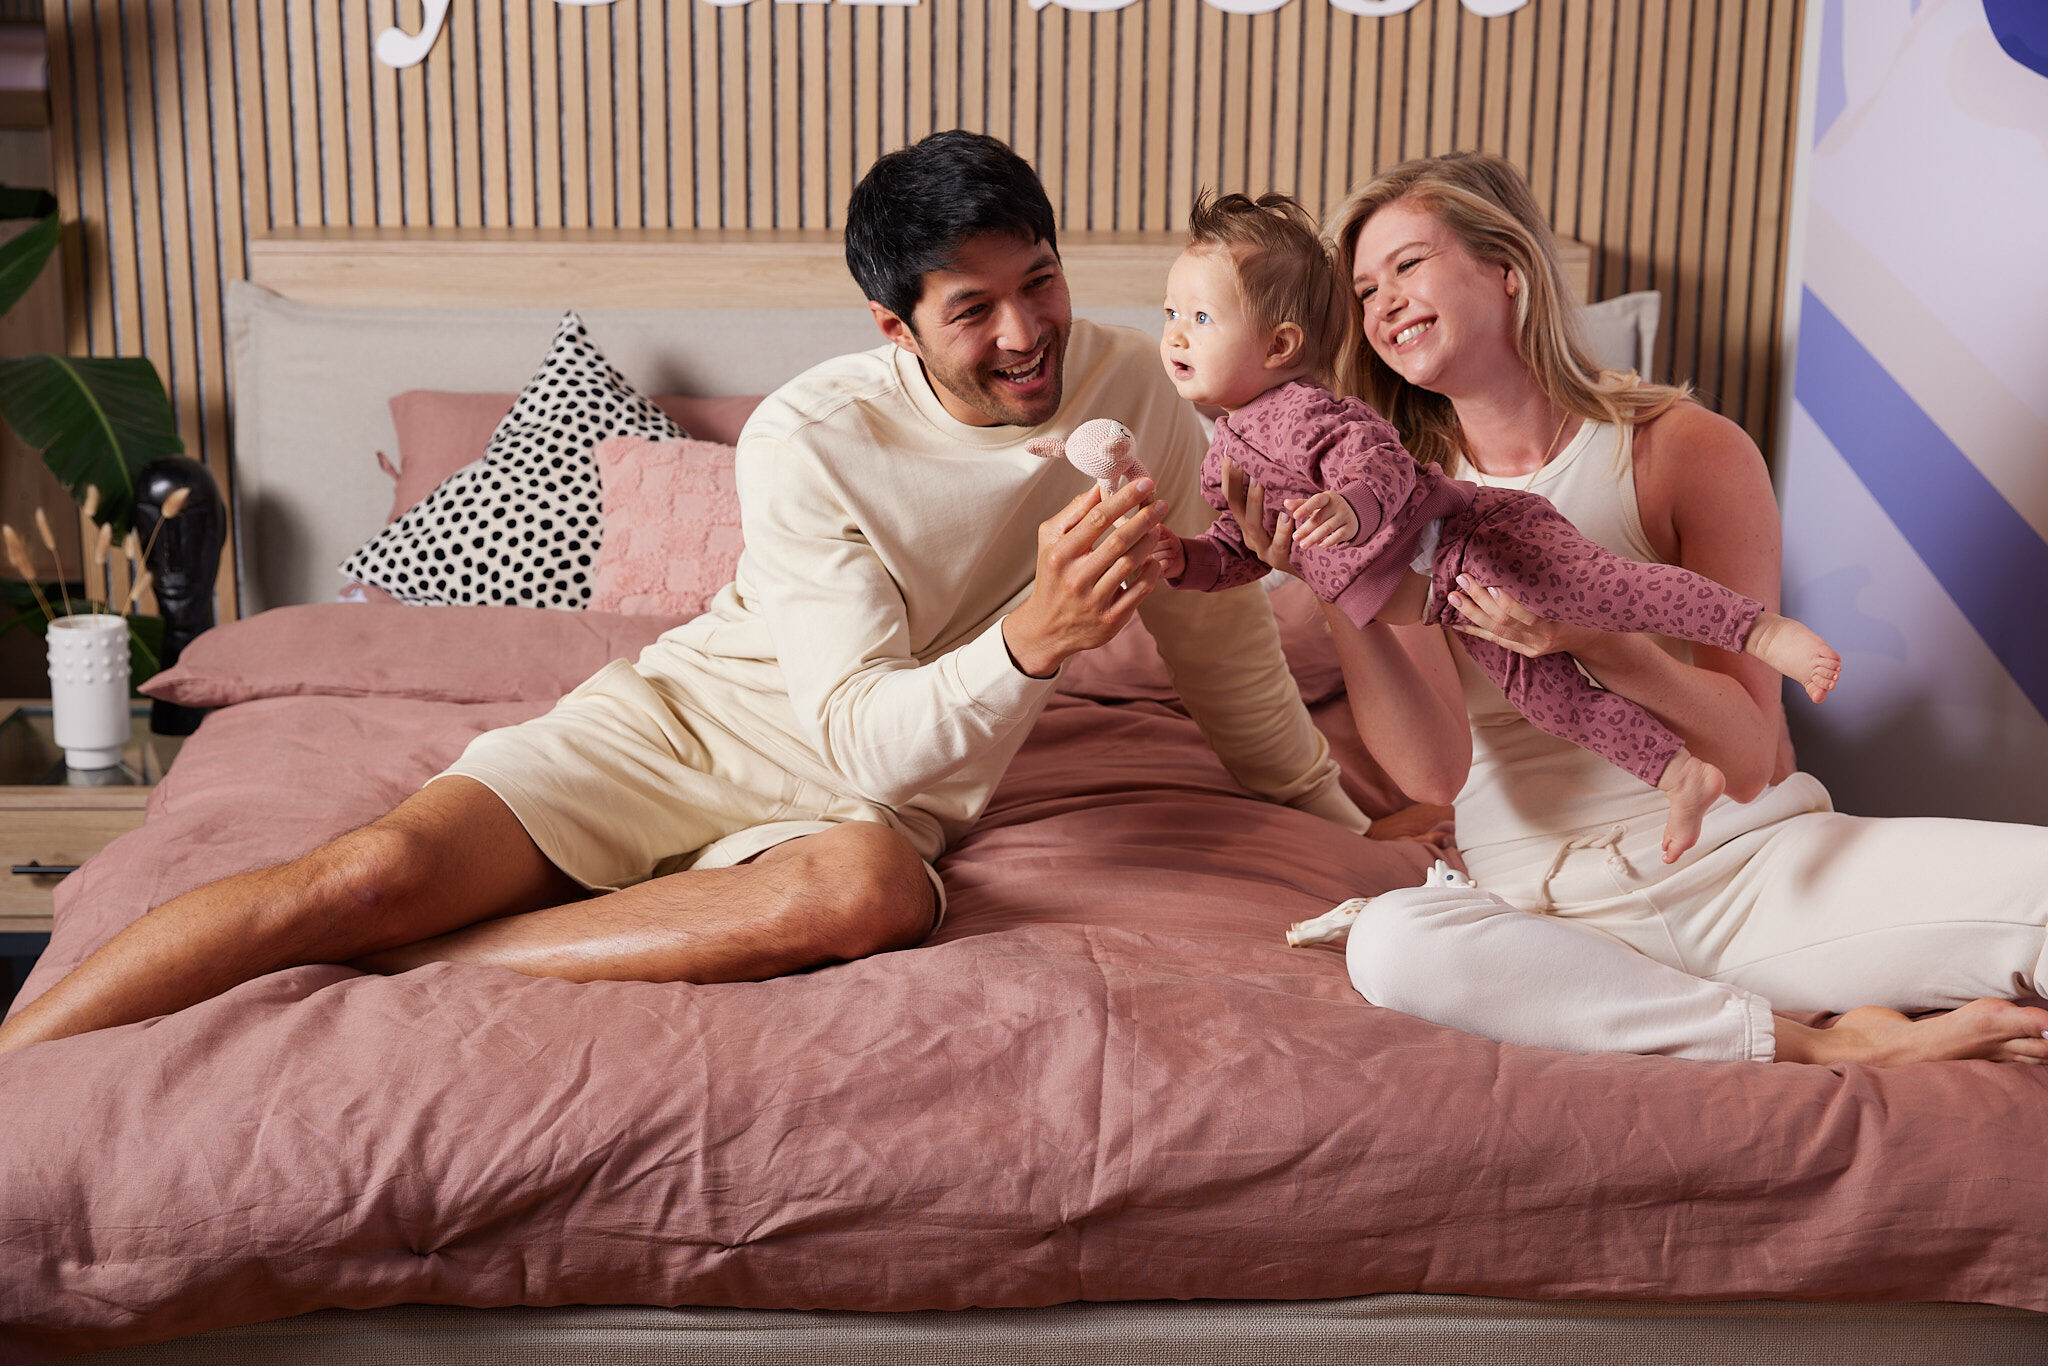 Sponsored – Ontwaak op je best: ‘Iedere ochtend nemen we onze dochter bij ons in bed’